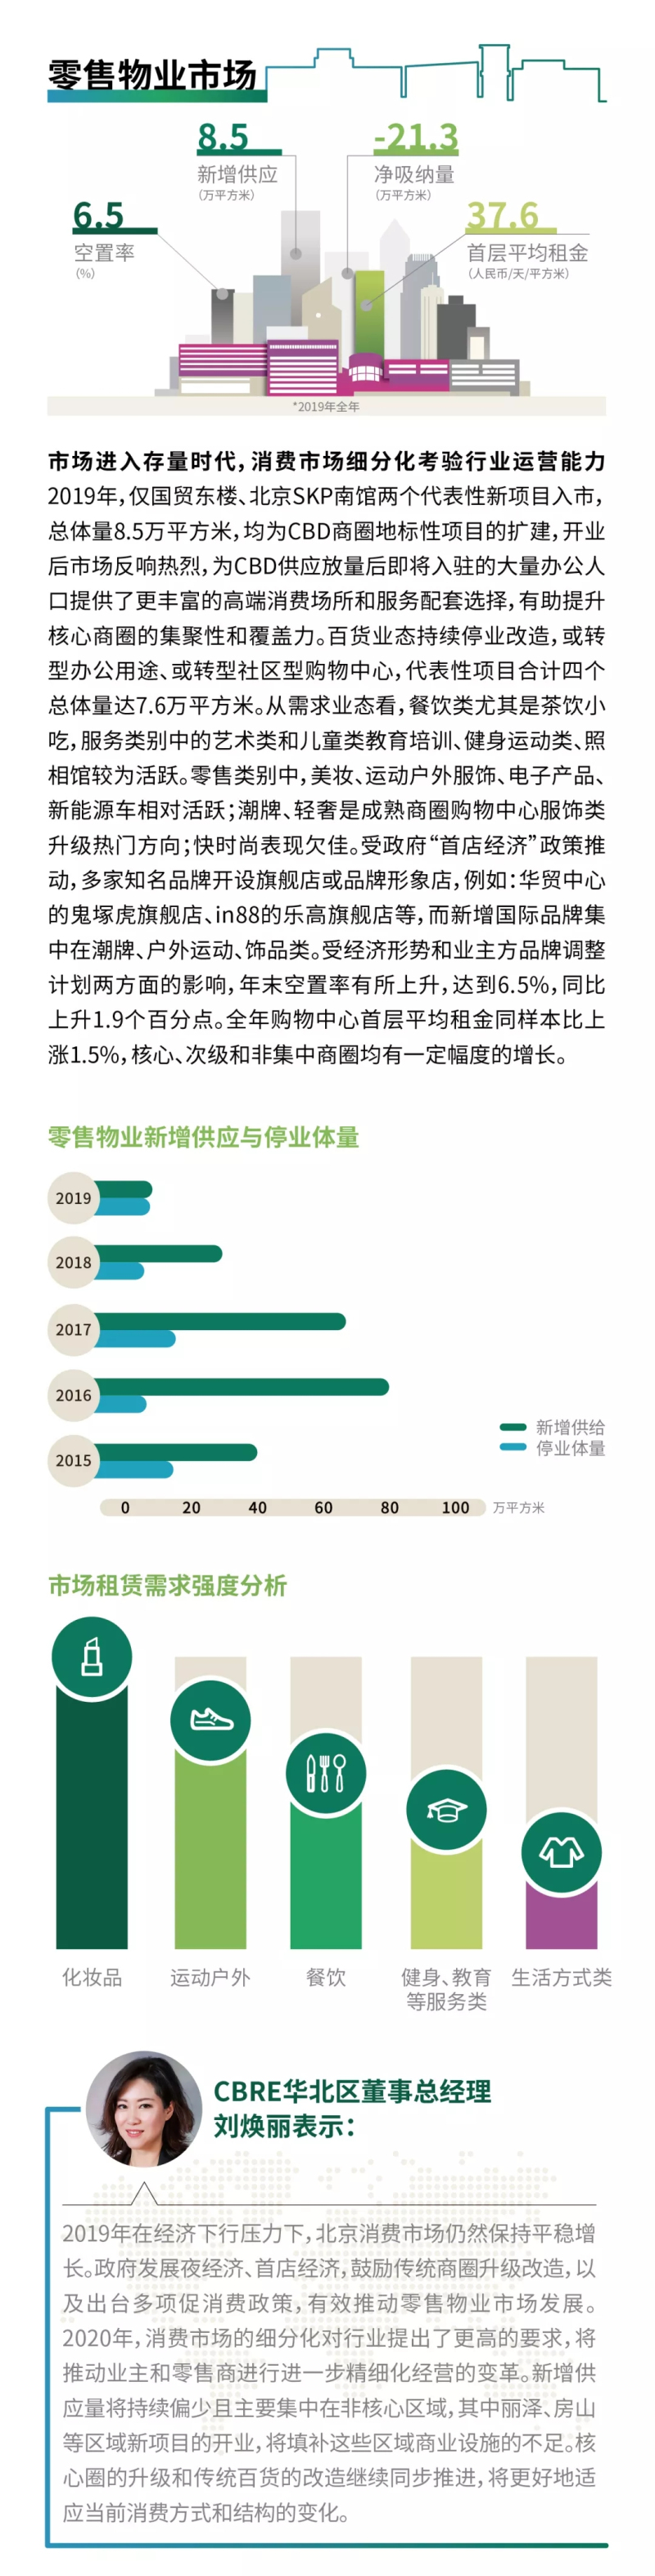 2019年北京房地产市场回顾及2020年展望